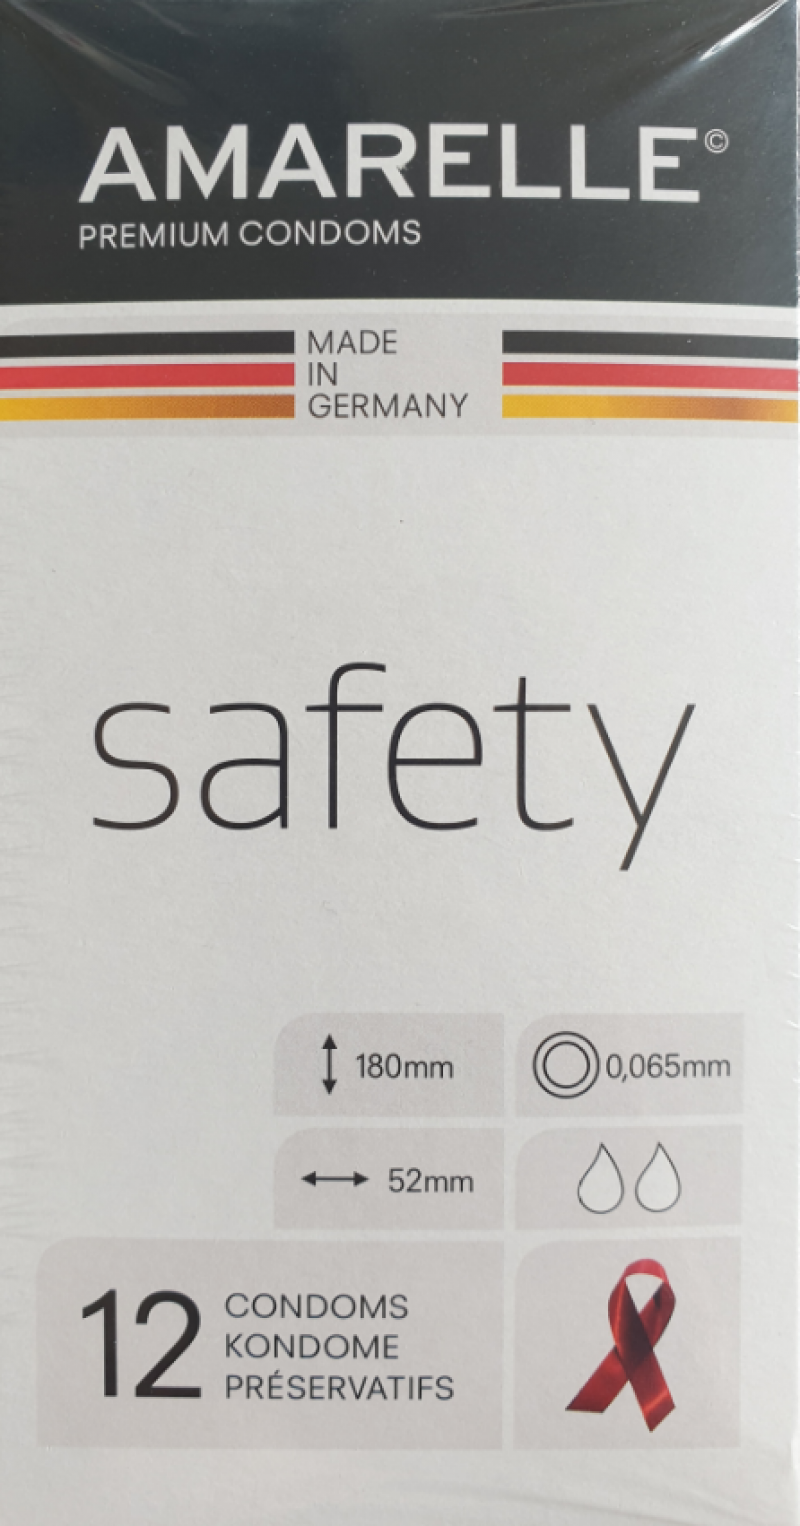 Verpackung von Amarellle Kondomen "Safety". Weißer Hintergrund. Schwarzer Streifen oben.